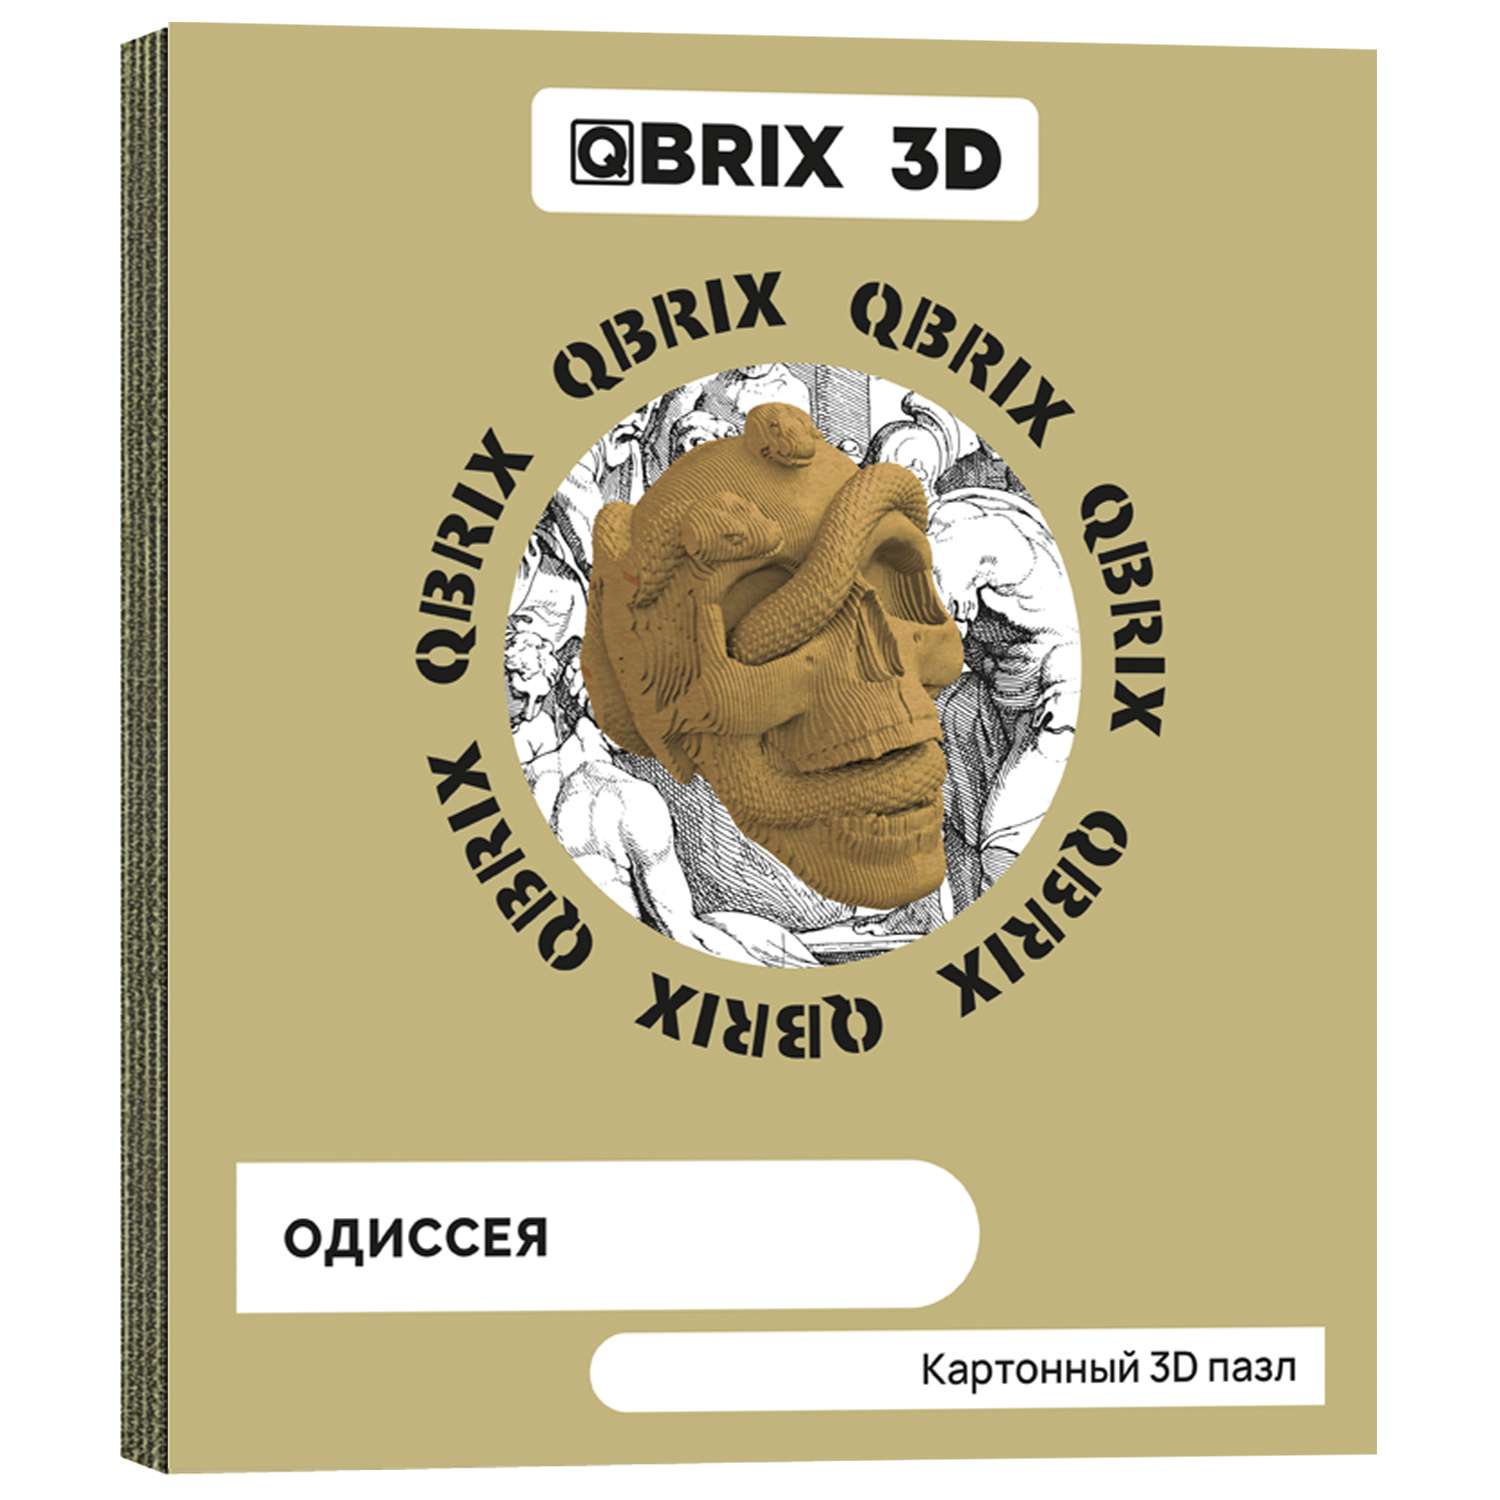 Конструктор QBRIX 3D картонный Одиссея 20020 20020 - фото 1